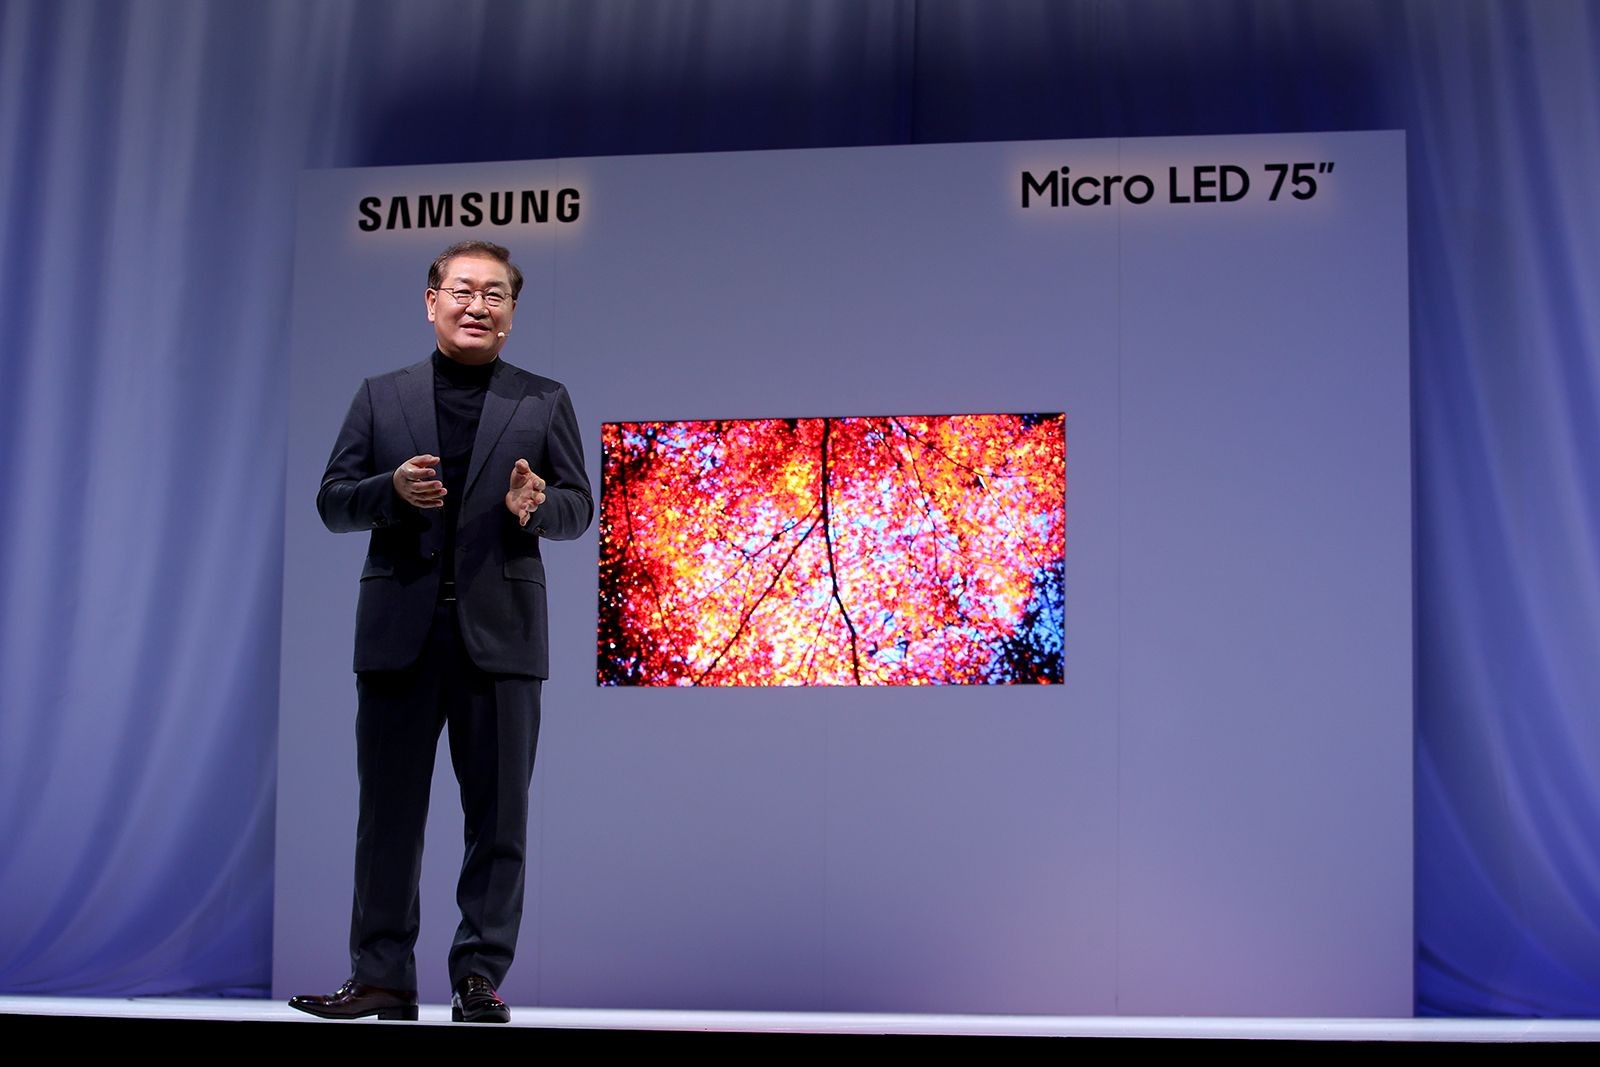 Samsung micro led 75" prezentacja